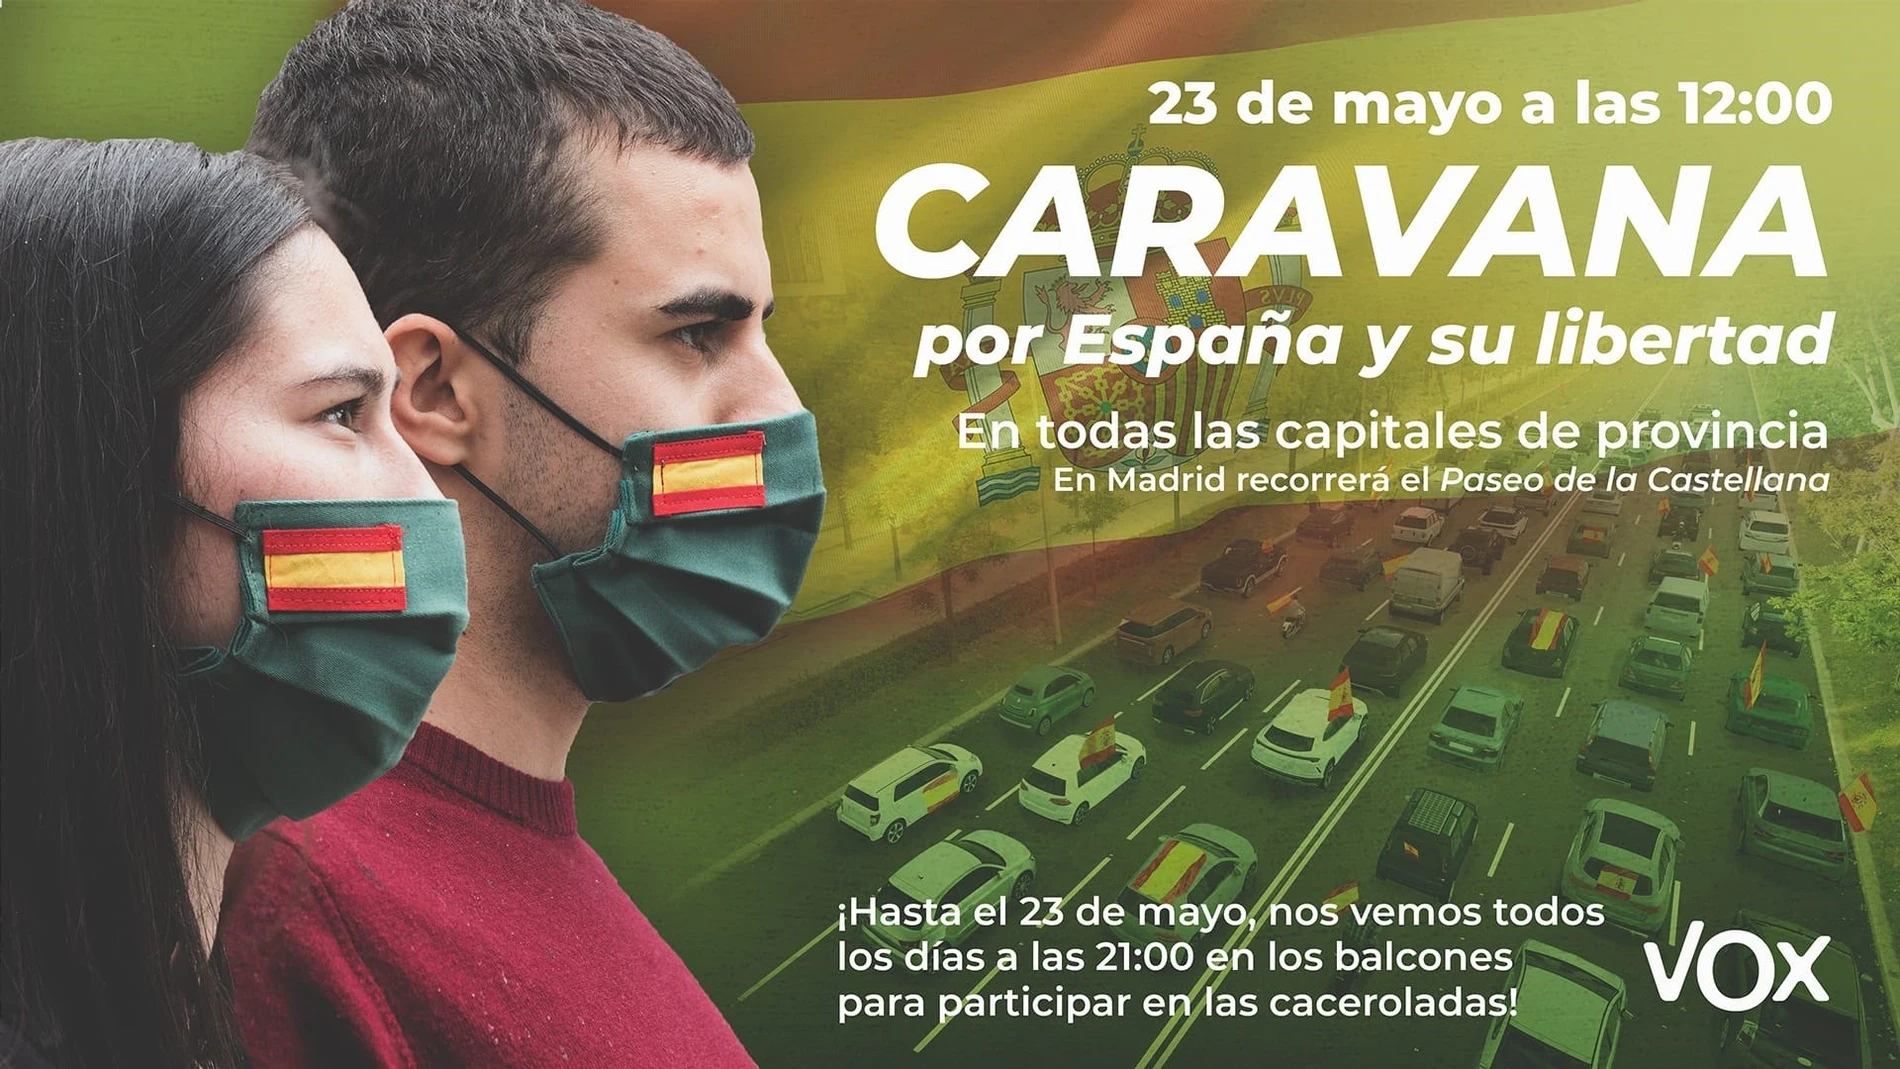 VOX León se suma a la caravana-manifestación convocada para el 23 de mayo